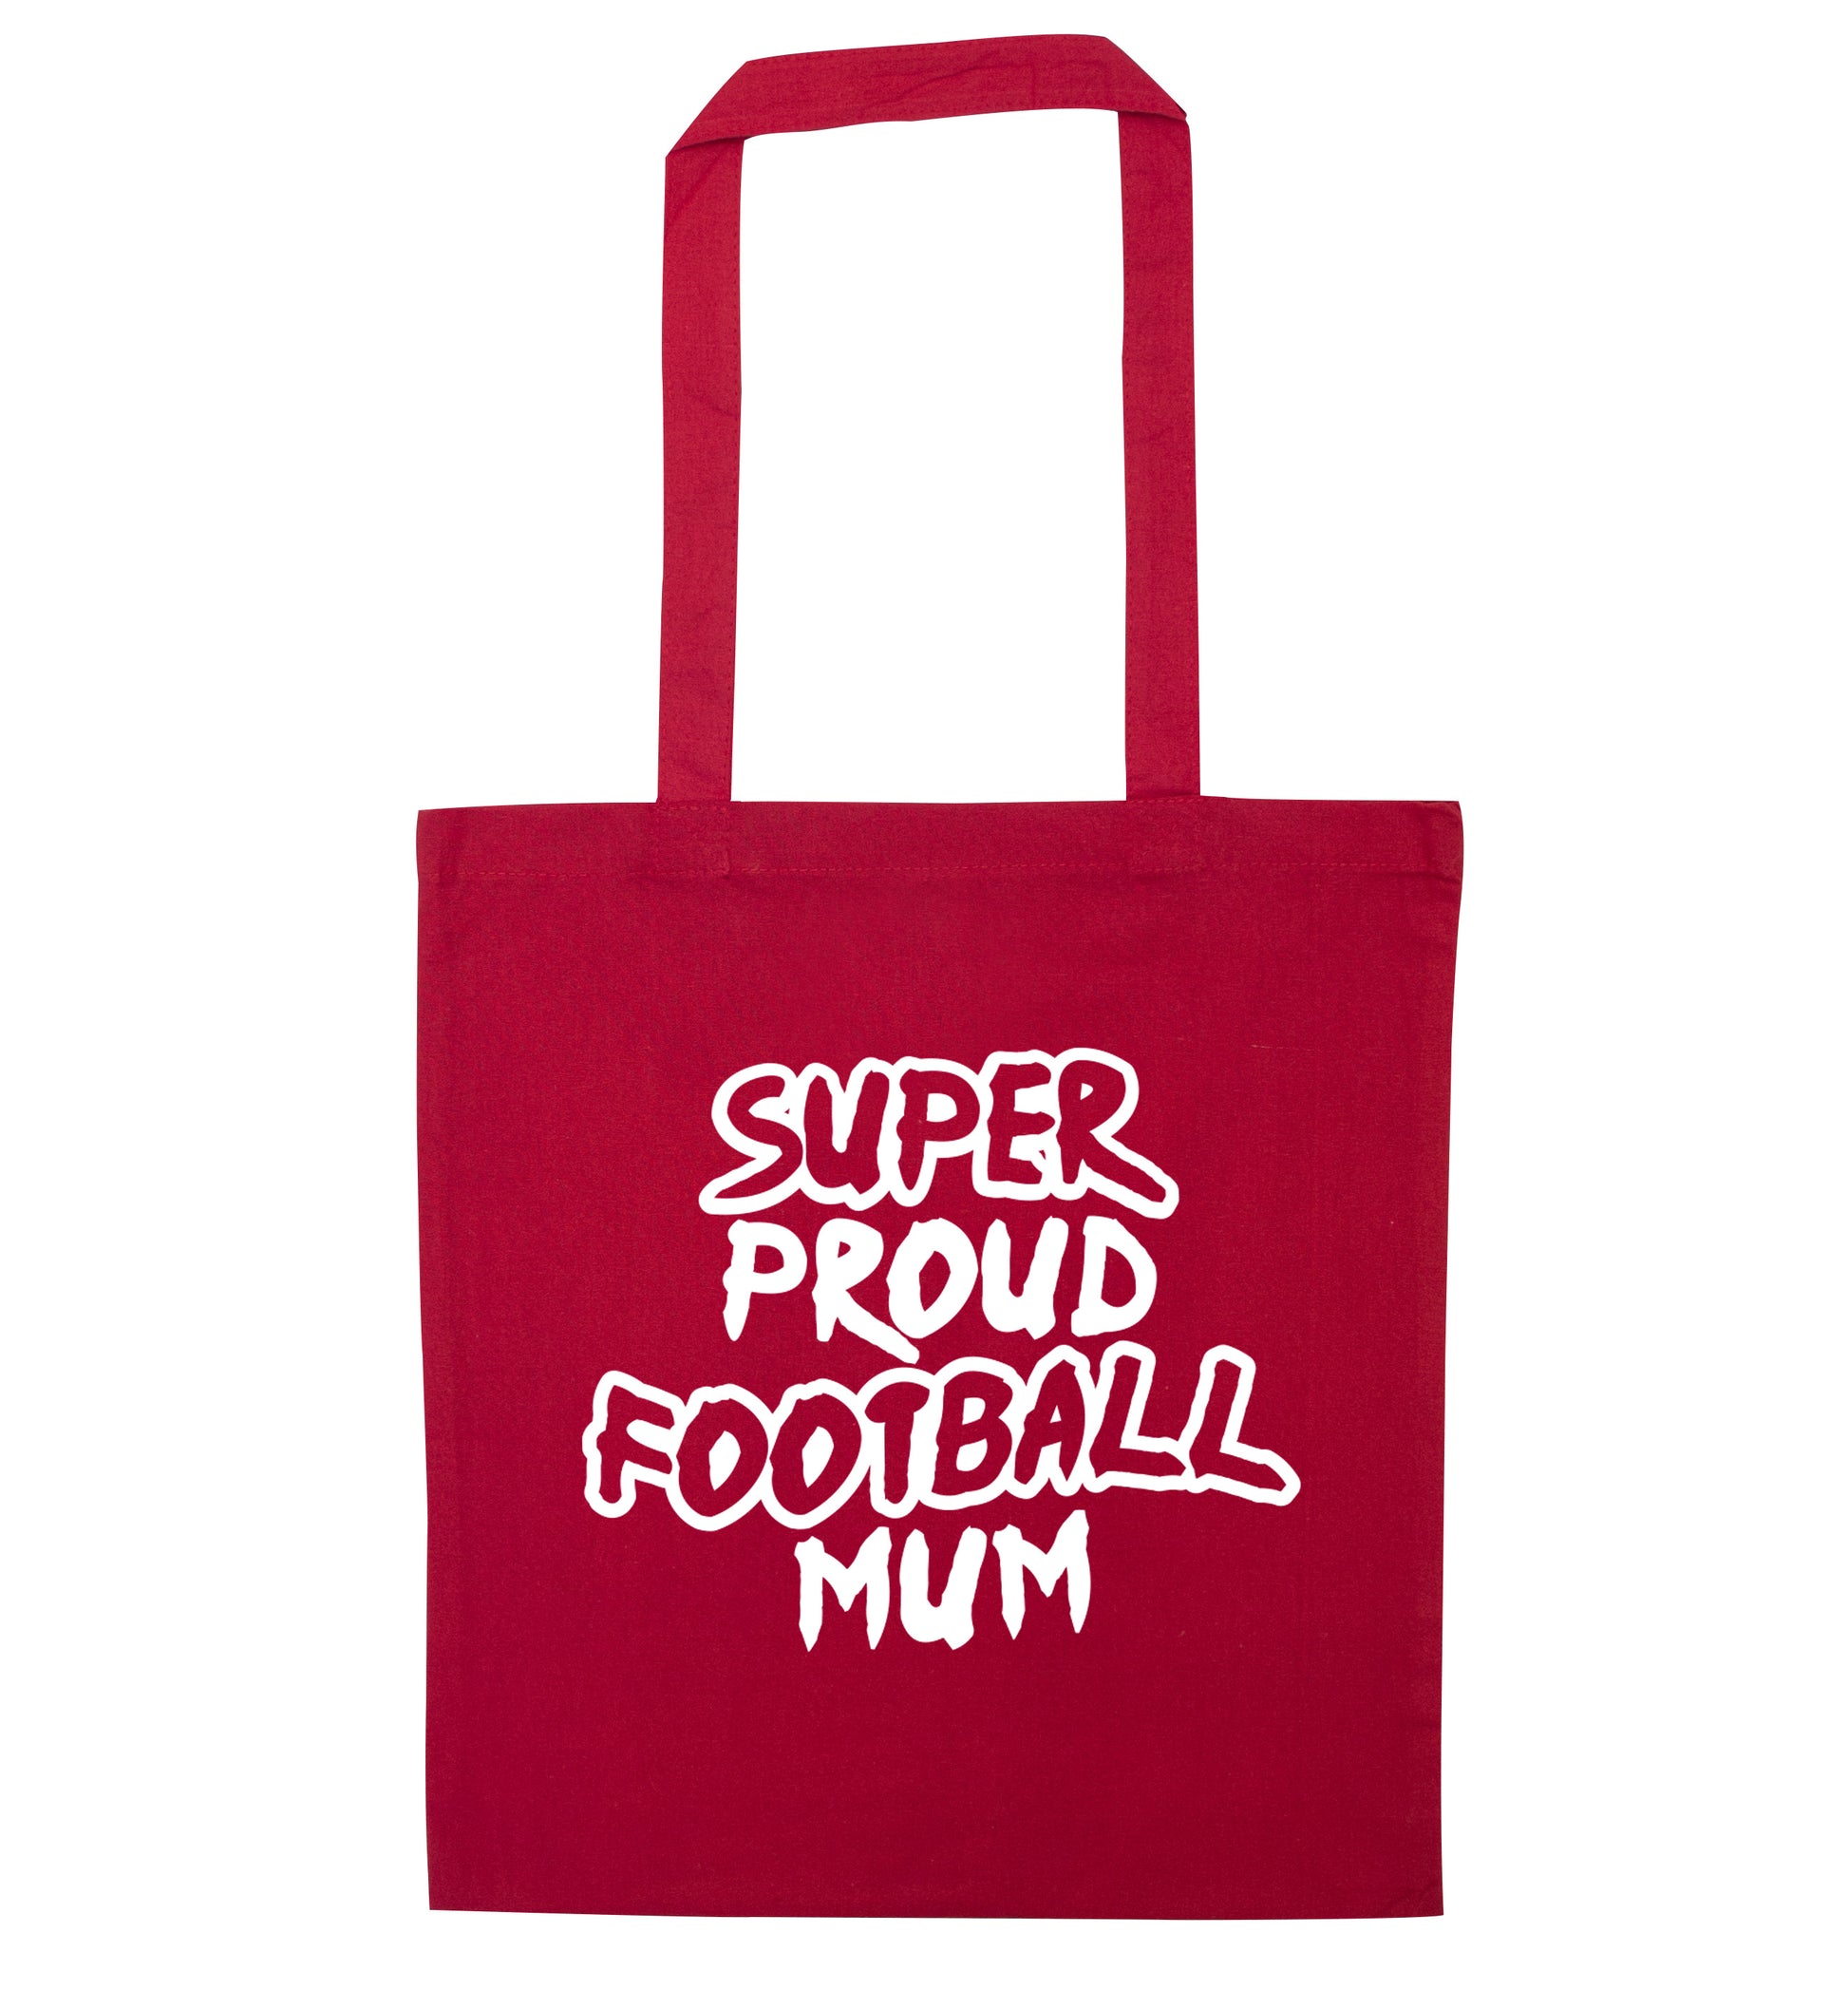 Super proud football mum red tote bag